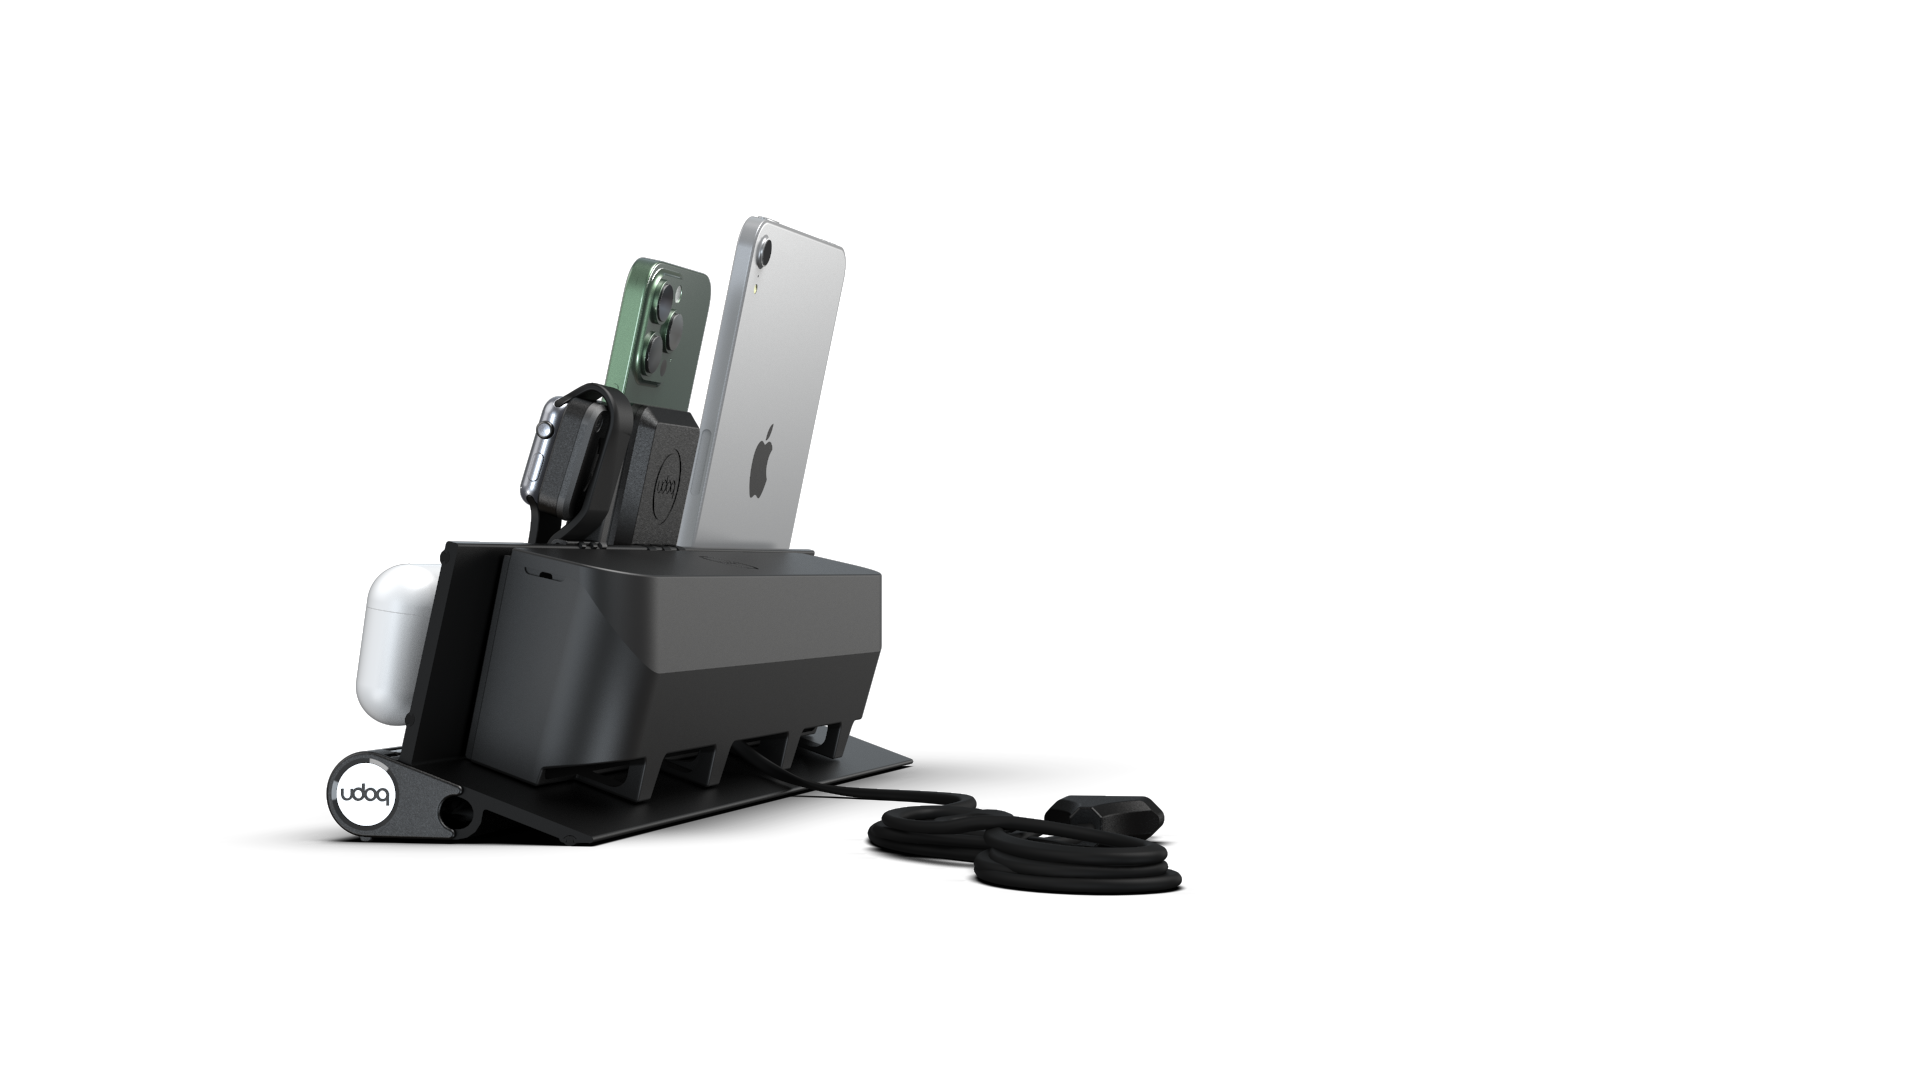 udoq Station de charge multiple 400 en noir avec MagSafe et Power Delivery Charger, adaptateur Apple Watch